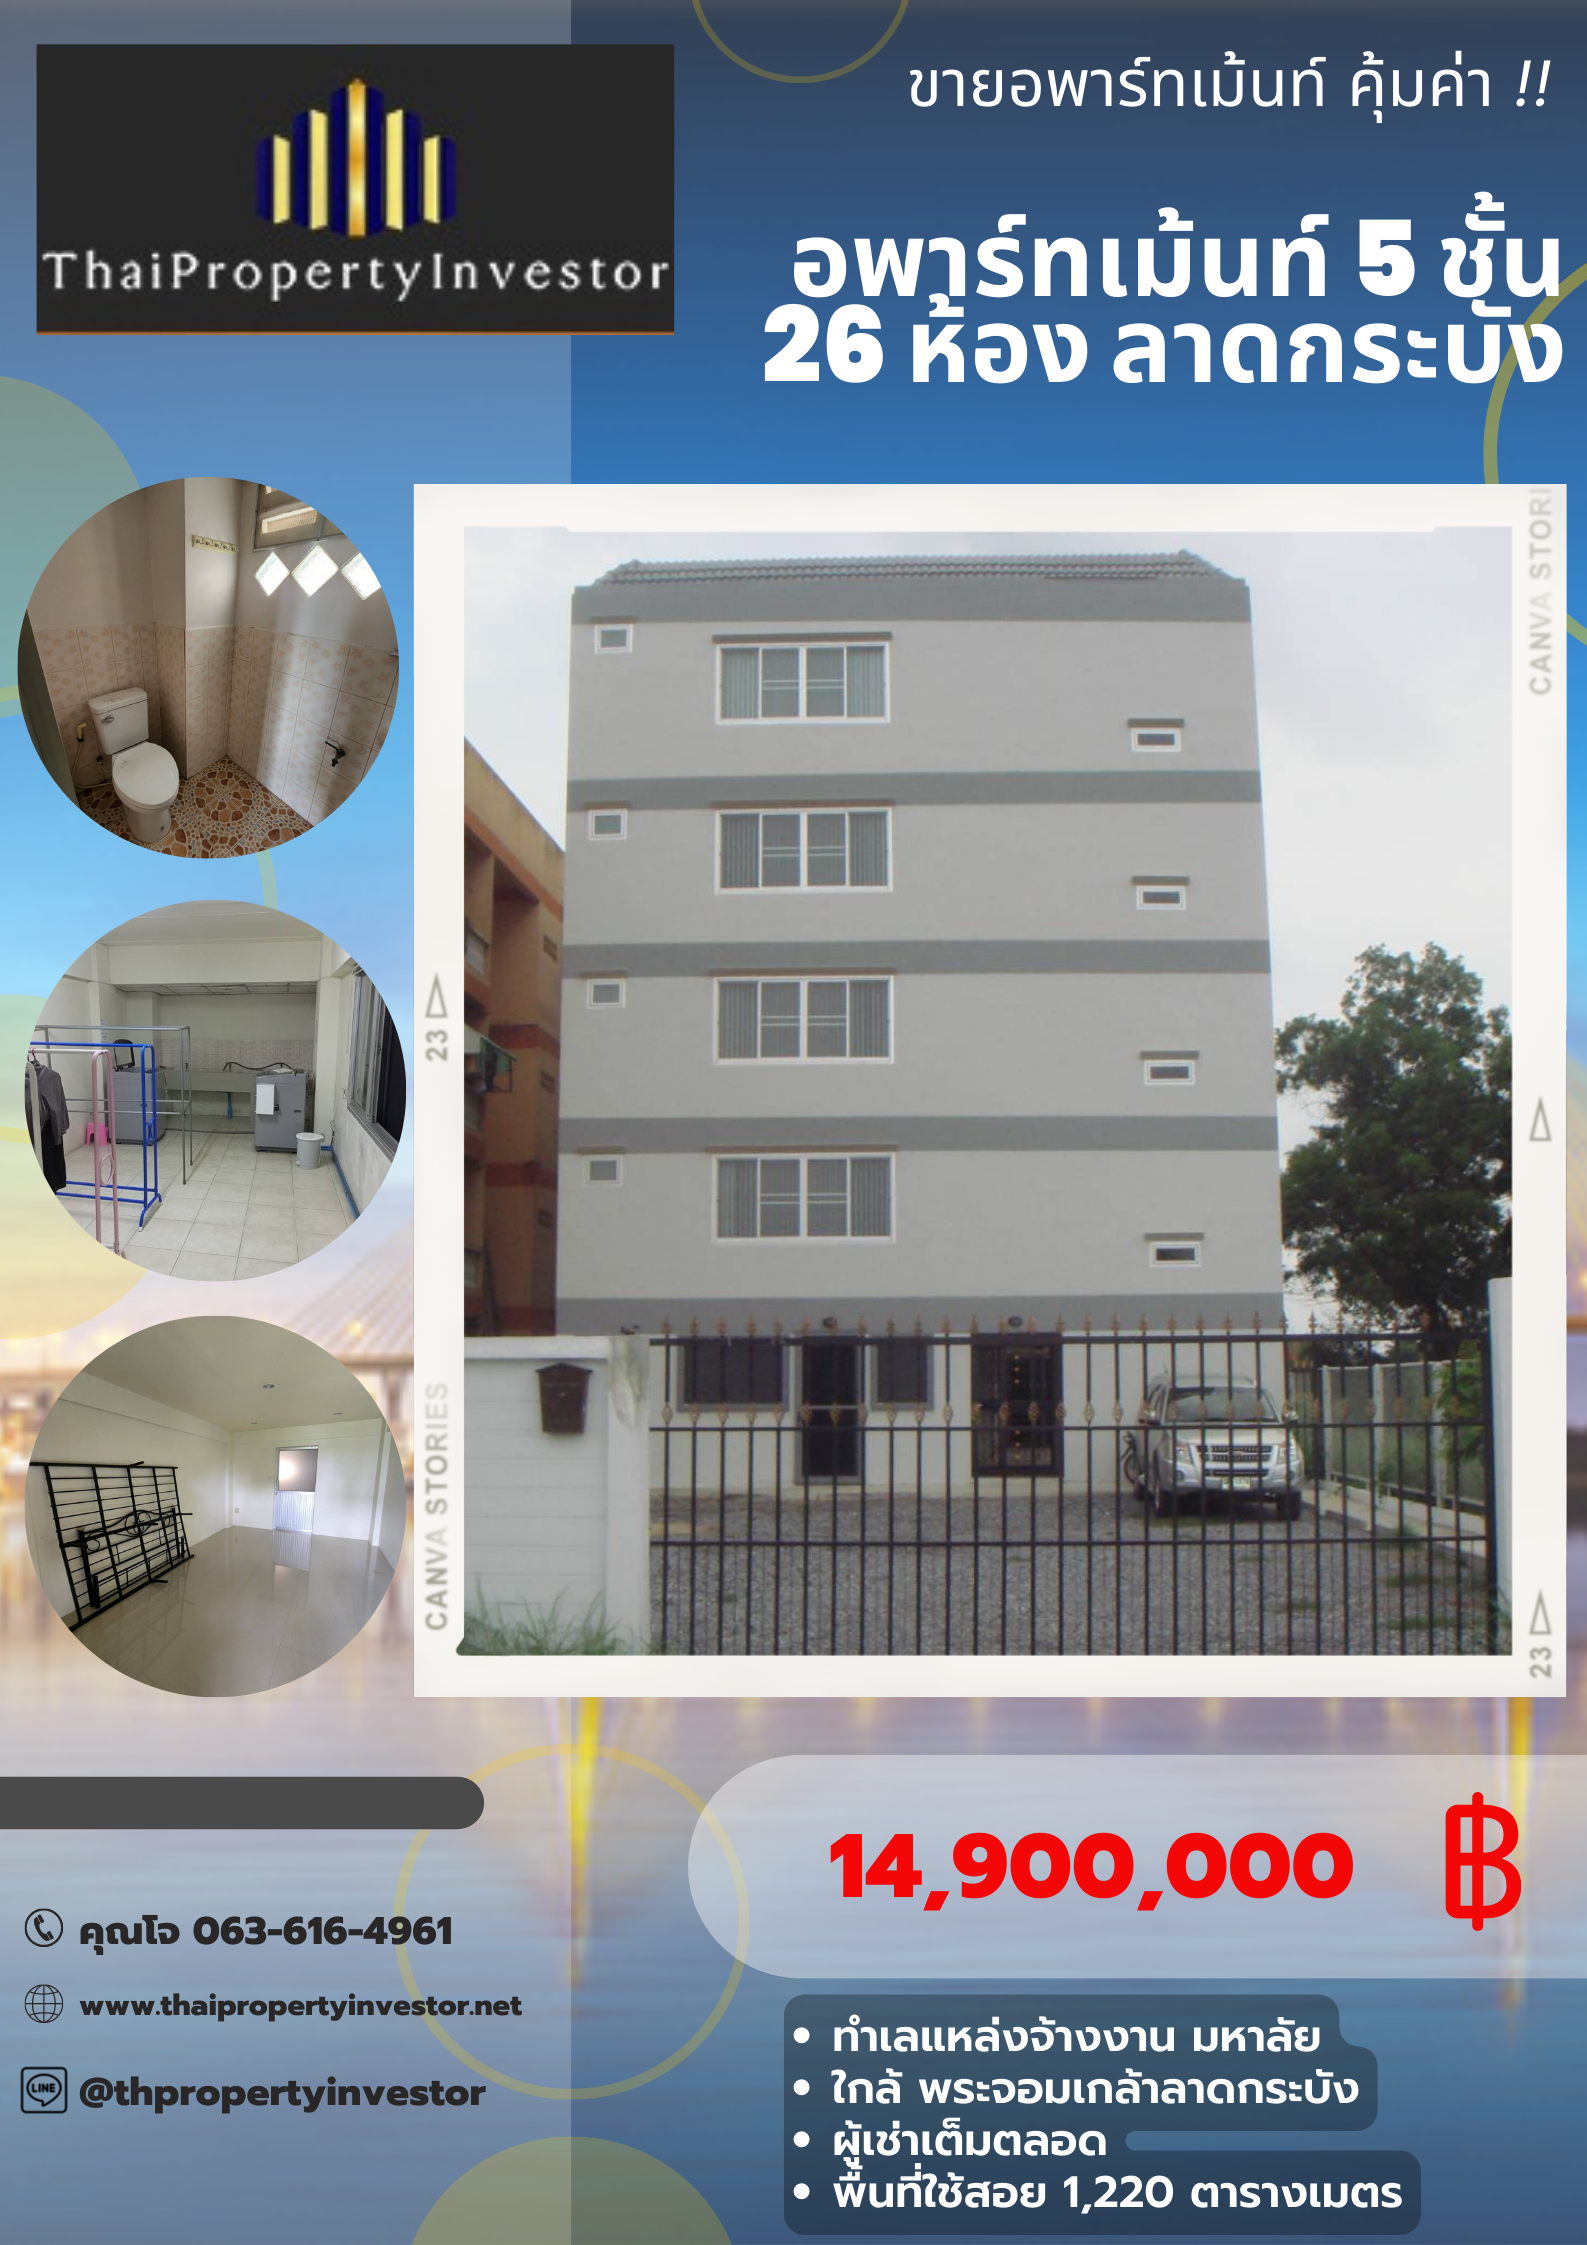 租户一直满 出售五层楼公寓26个房间 129平方哇 靠近大马路  Chalong Krung  53路 Lat Krabang工作区域